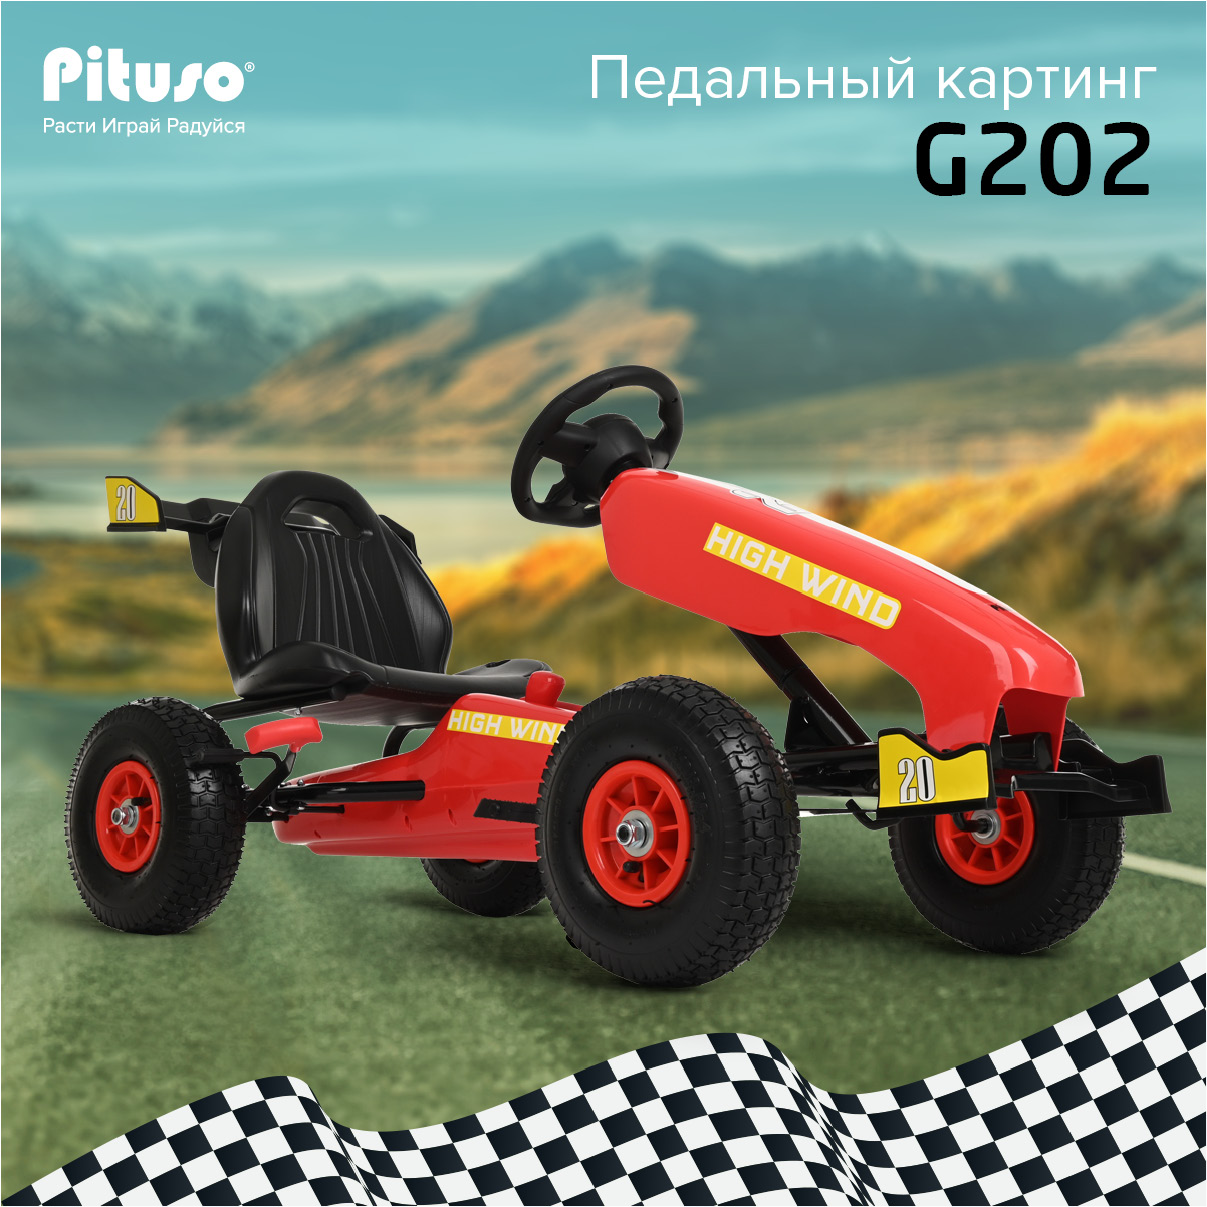 Педальный картинг Pituso G202 надувные колеса Красный, Red